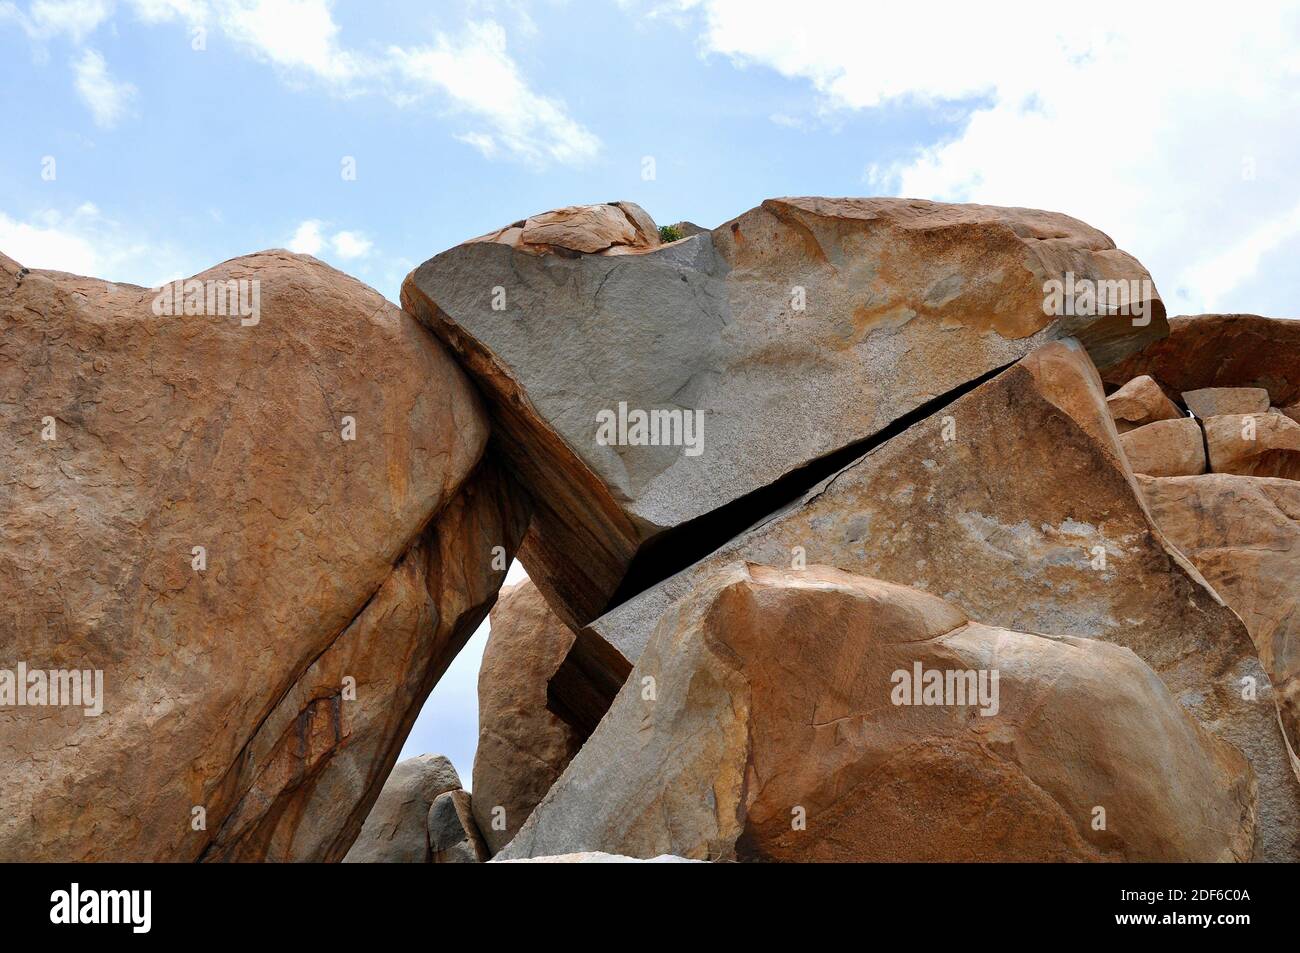 Diaclases en una roca granítica. Diaclase es una fractura en una roca sin desplazamiento significativo de las partes. Esta foto fue tomada en Hampi, India. Foto de stock